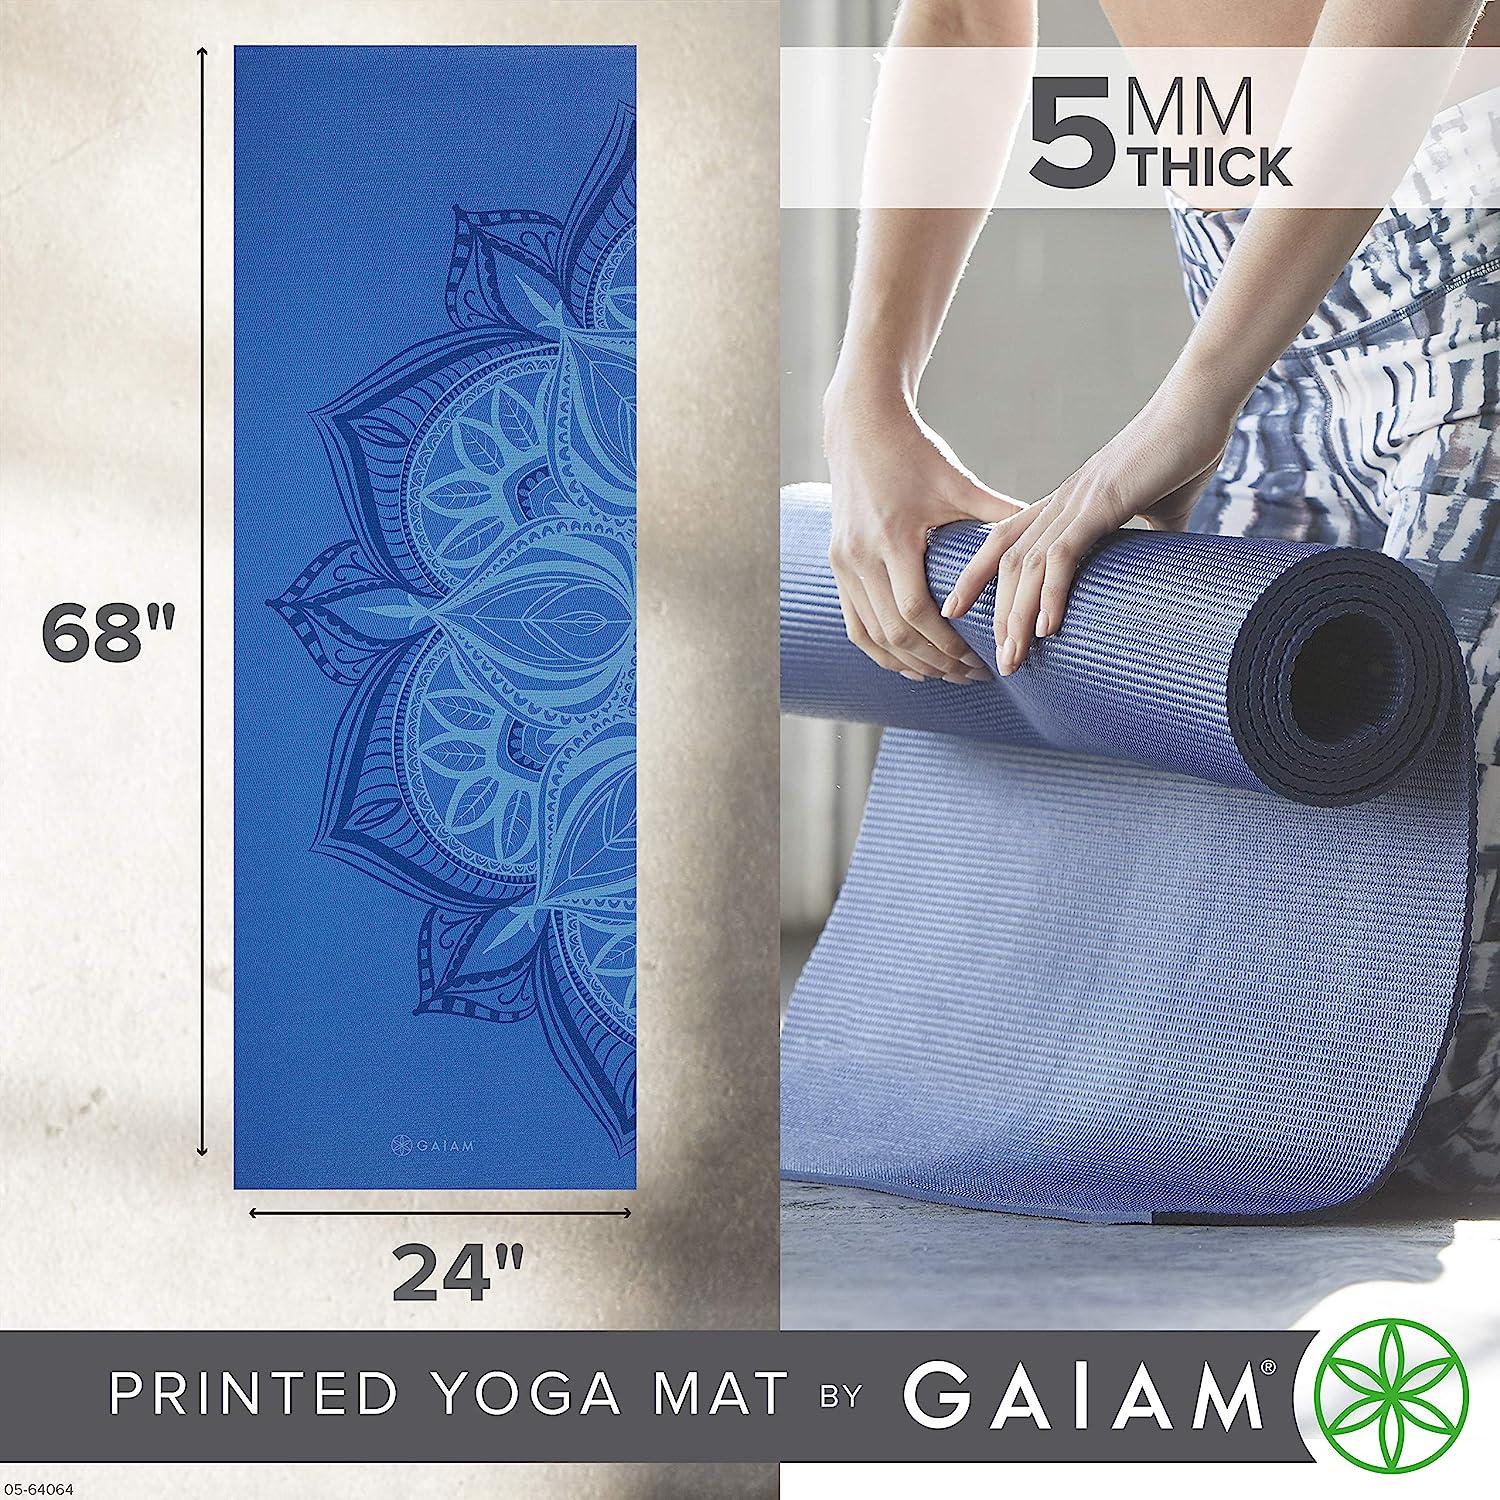 Gaiam Yoga Mat - Premium 5mm Print Thick Non Slip Exercise